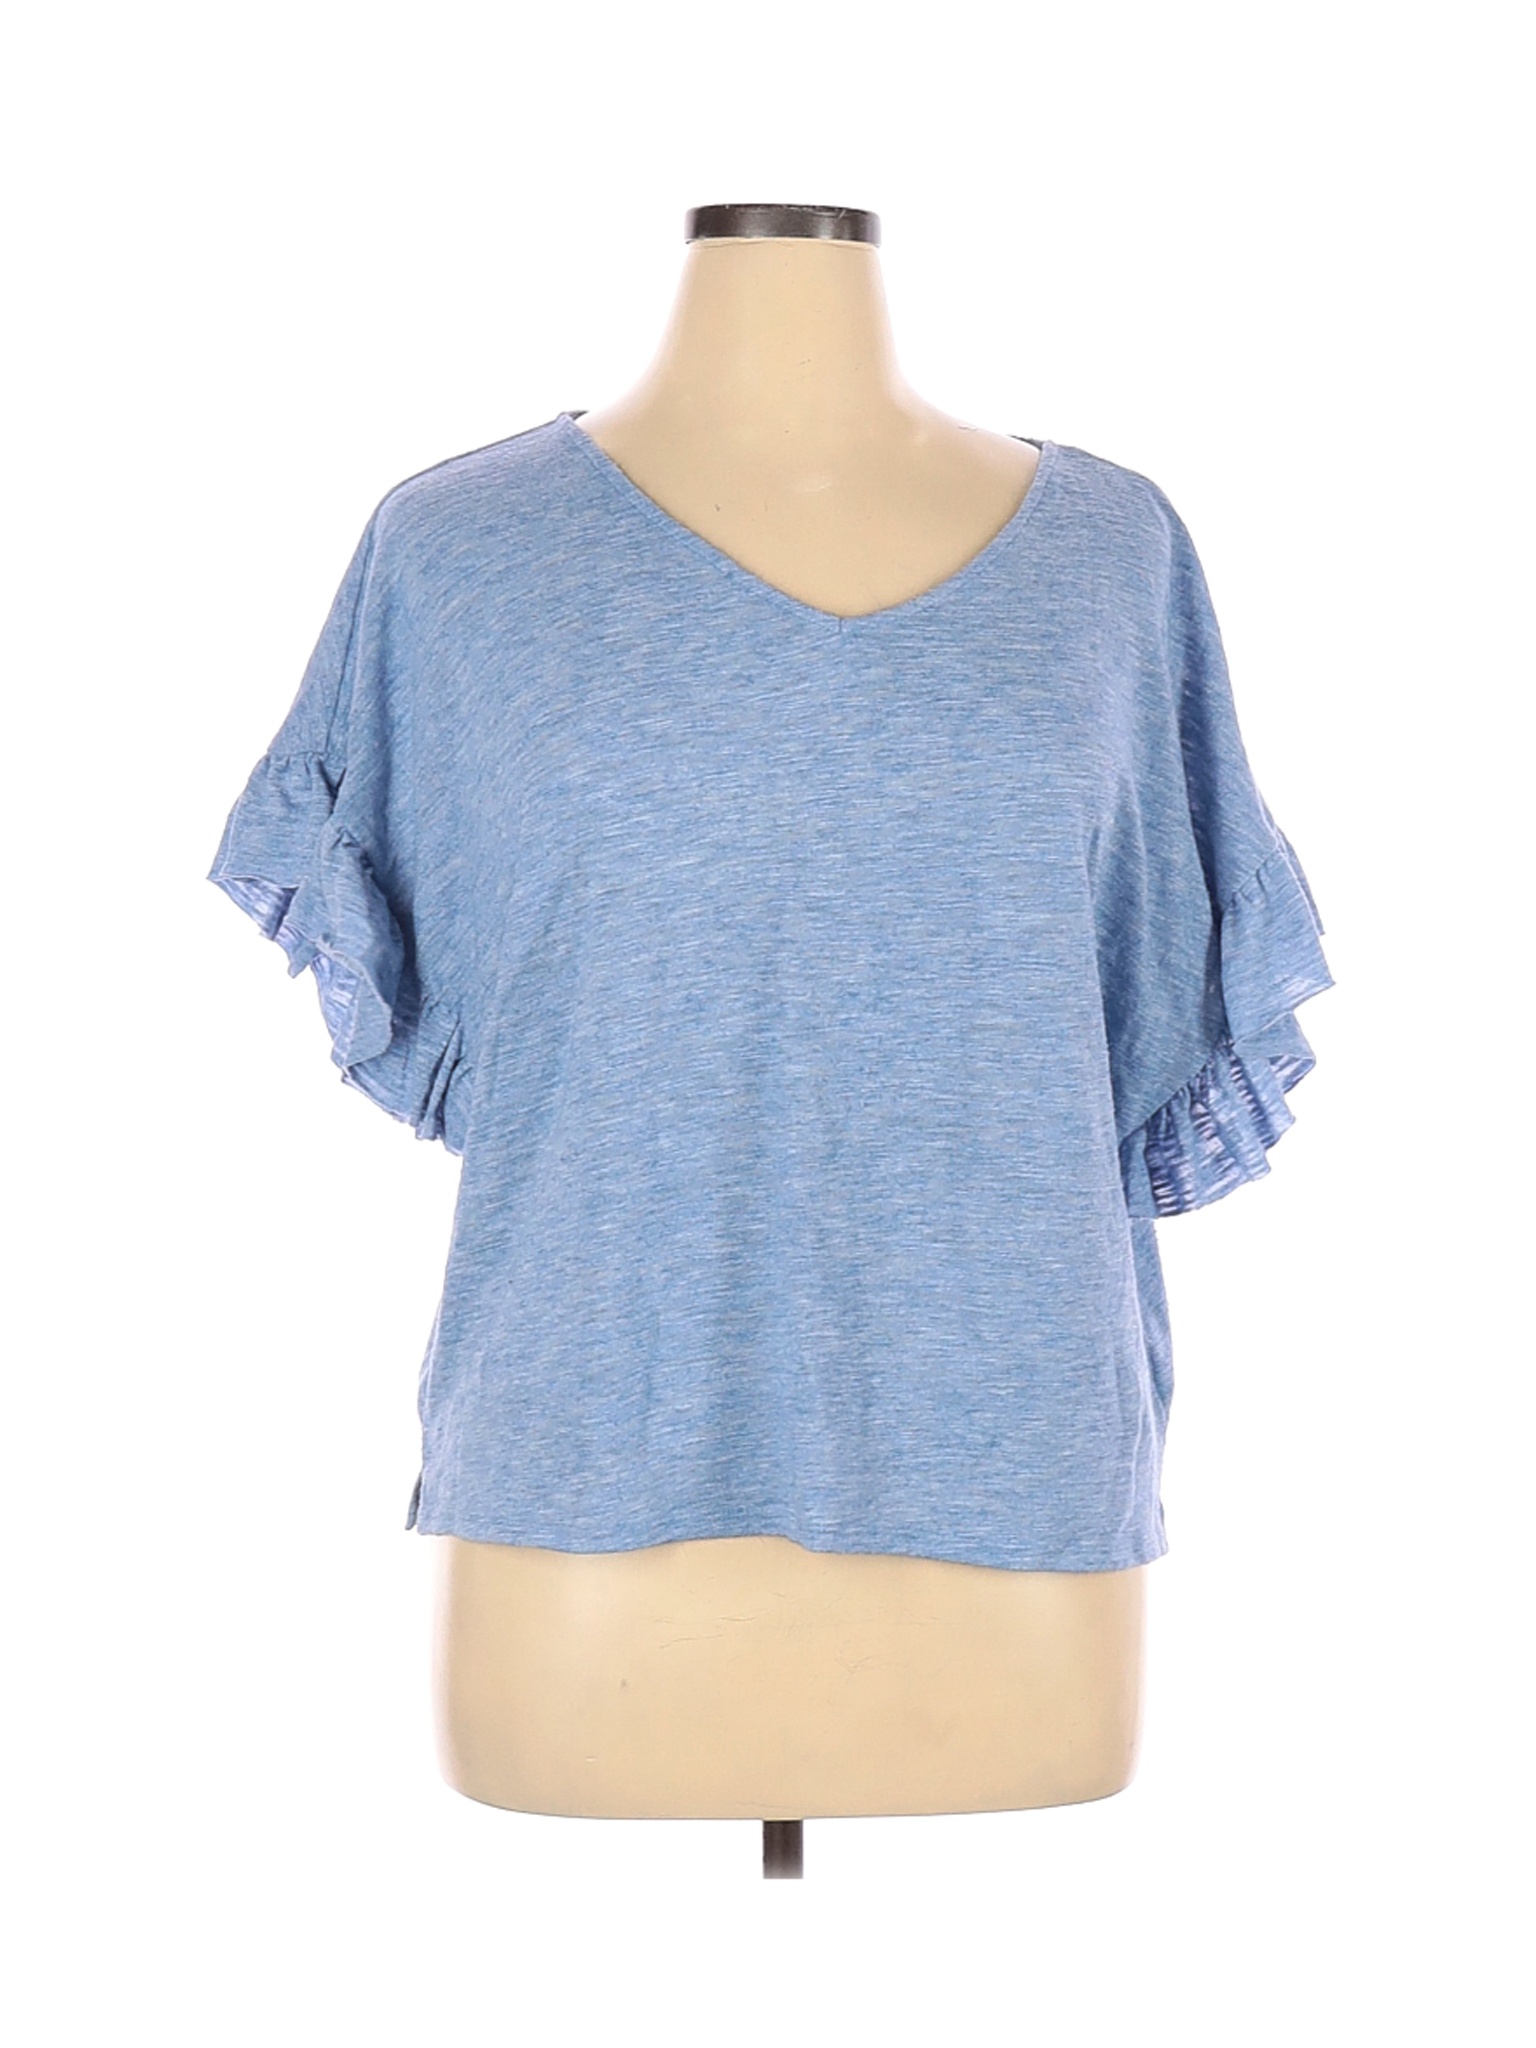 A.n.a. A New Approach Women Blue Short Sleeve Top XL | eBay